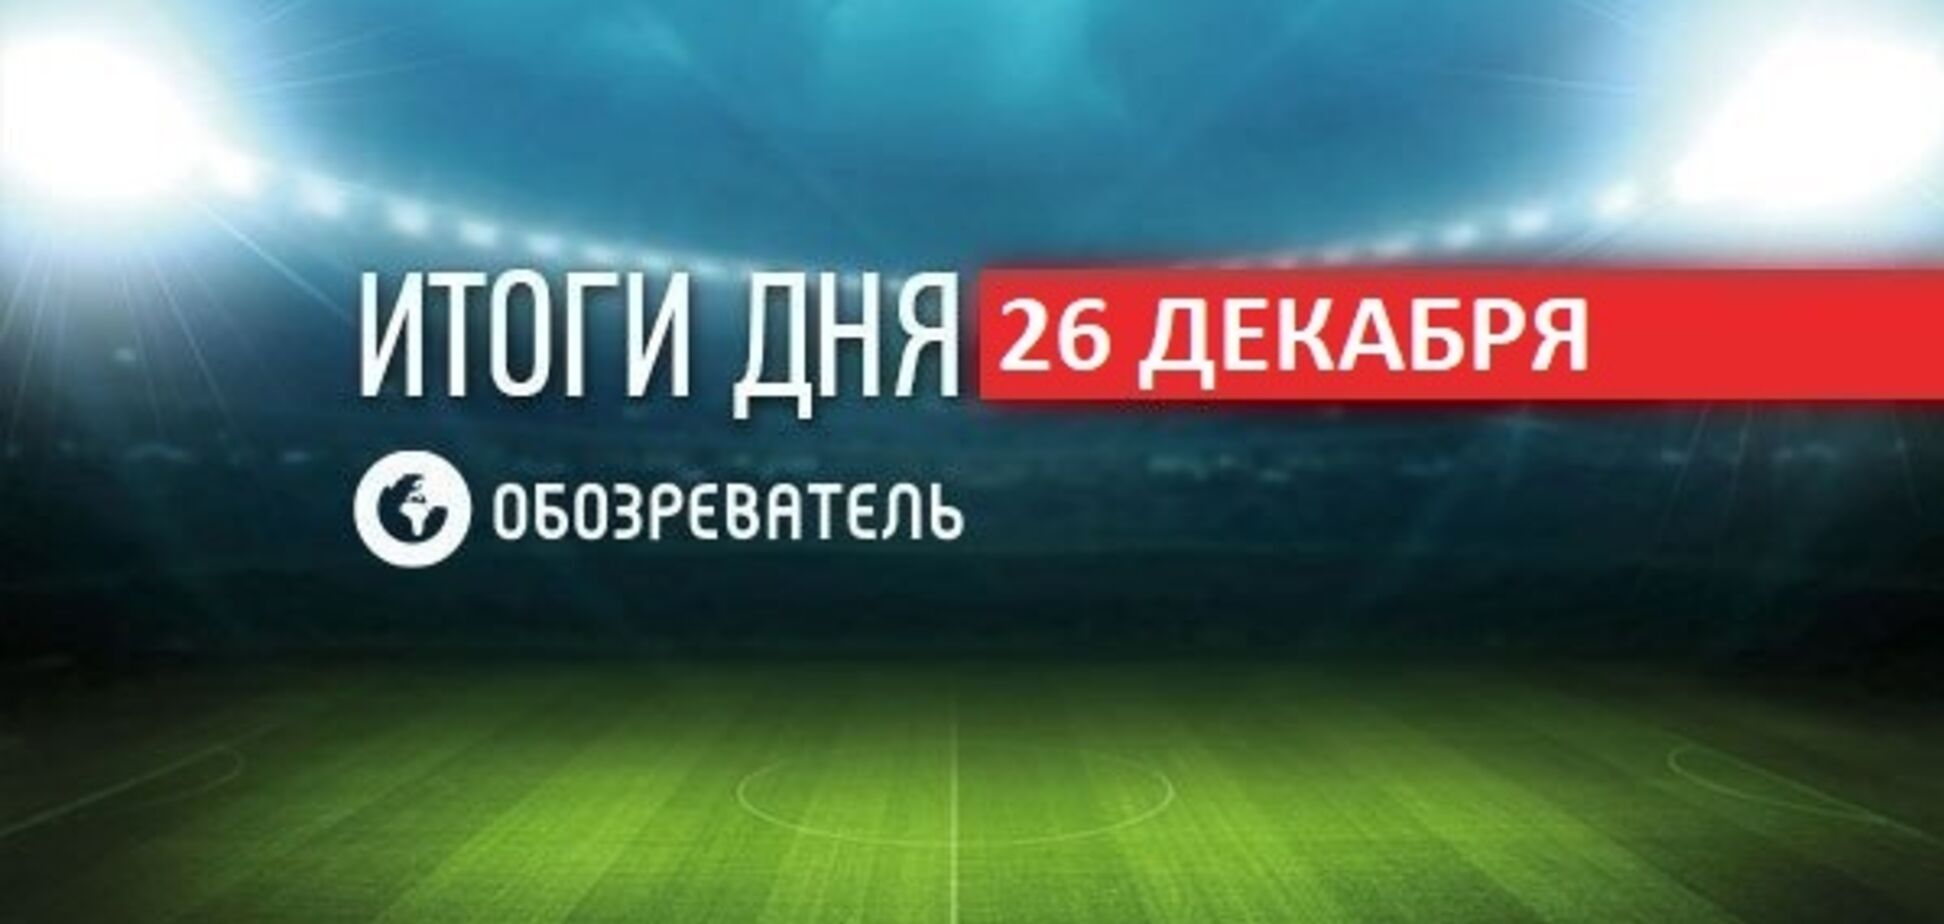 Ломаченко угодил в скандал с УПЦ МП: спортивные итоги 26 декабря